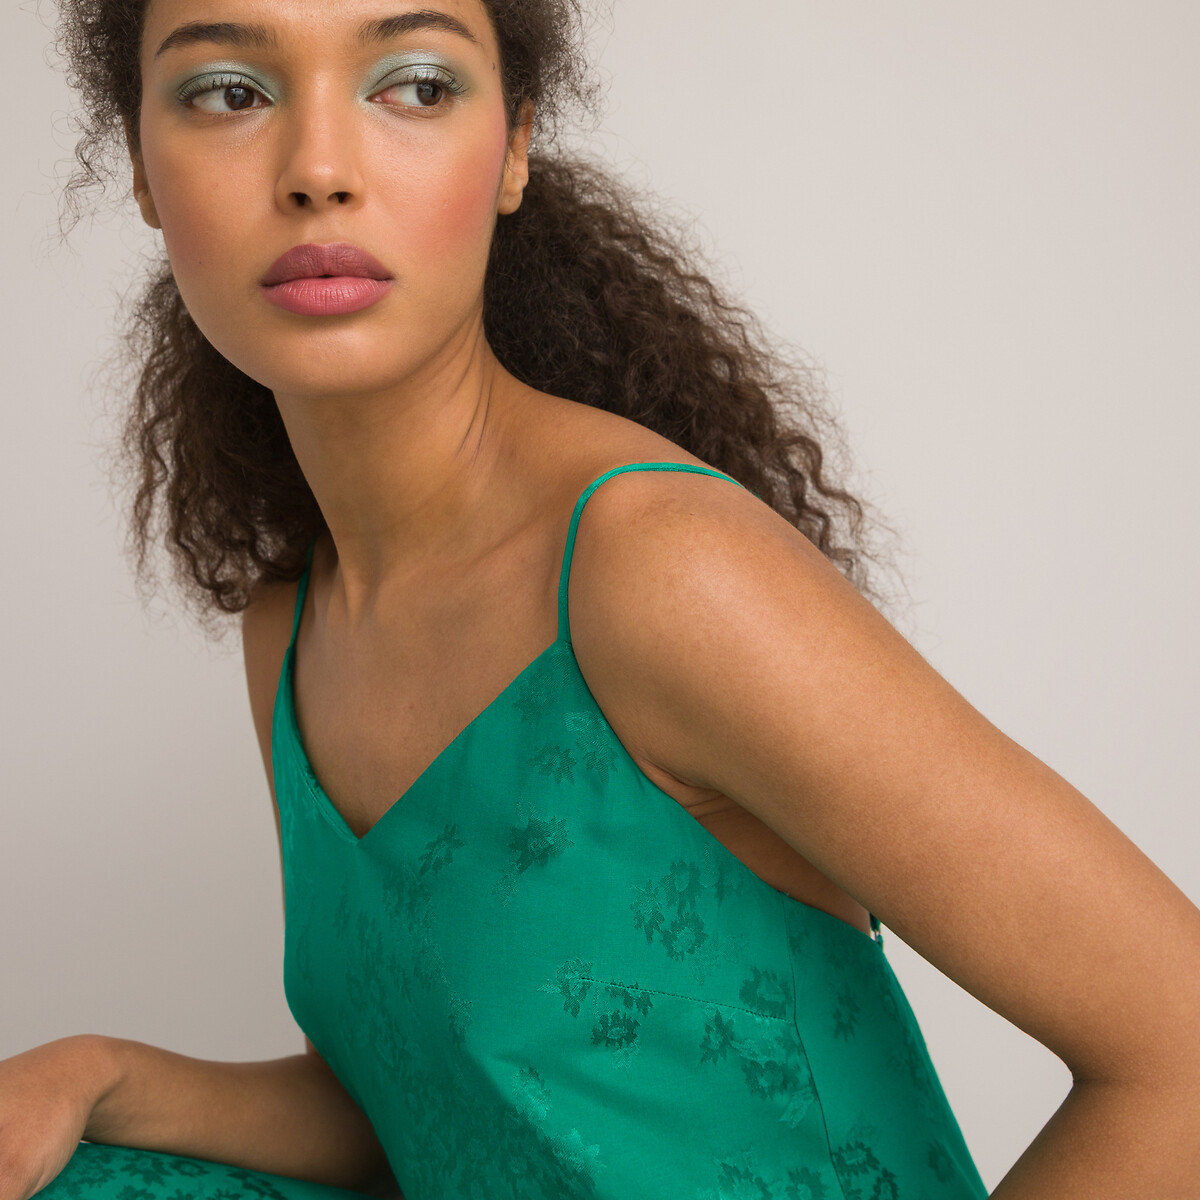 Платье Длинное в стиле нижнего белья тонкие бретели 54 зеленый LaRedoute, размер 54 - фото 3